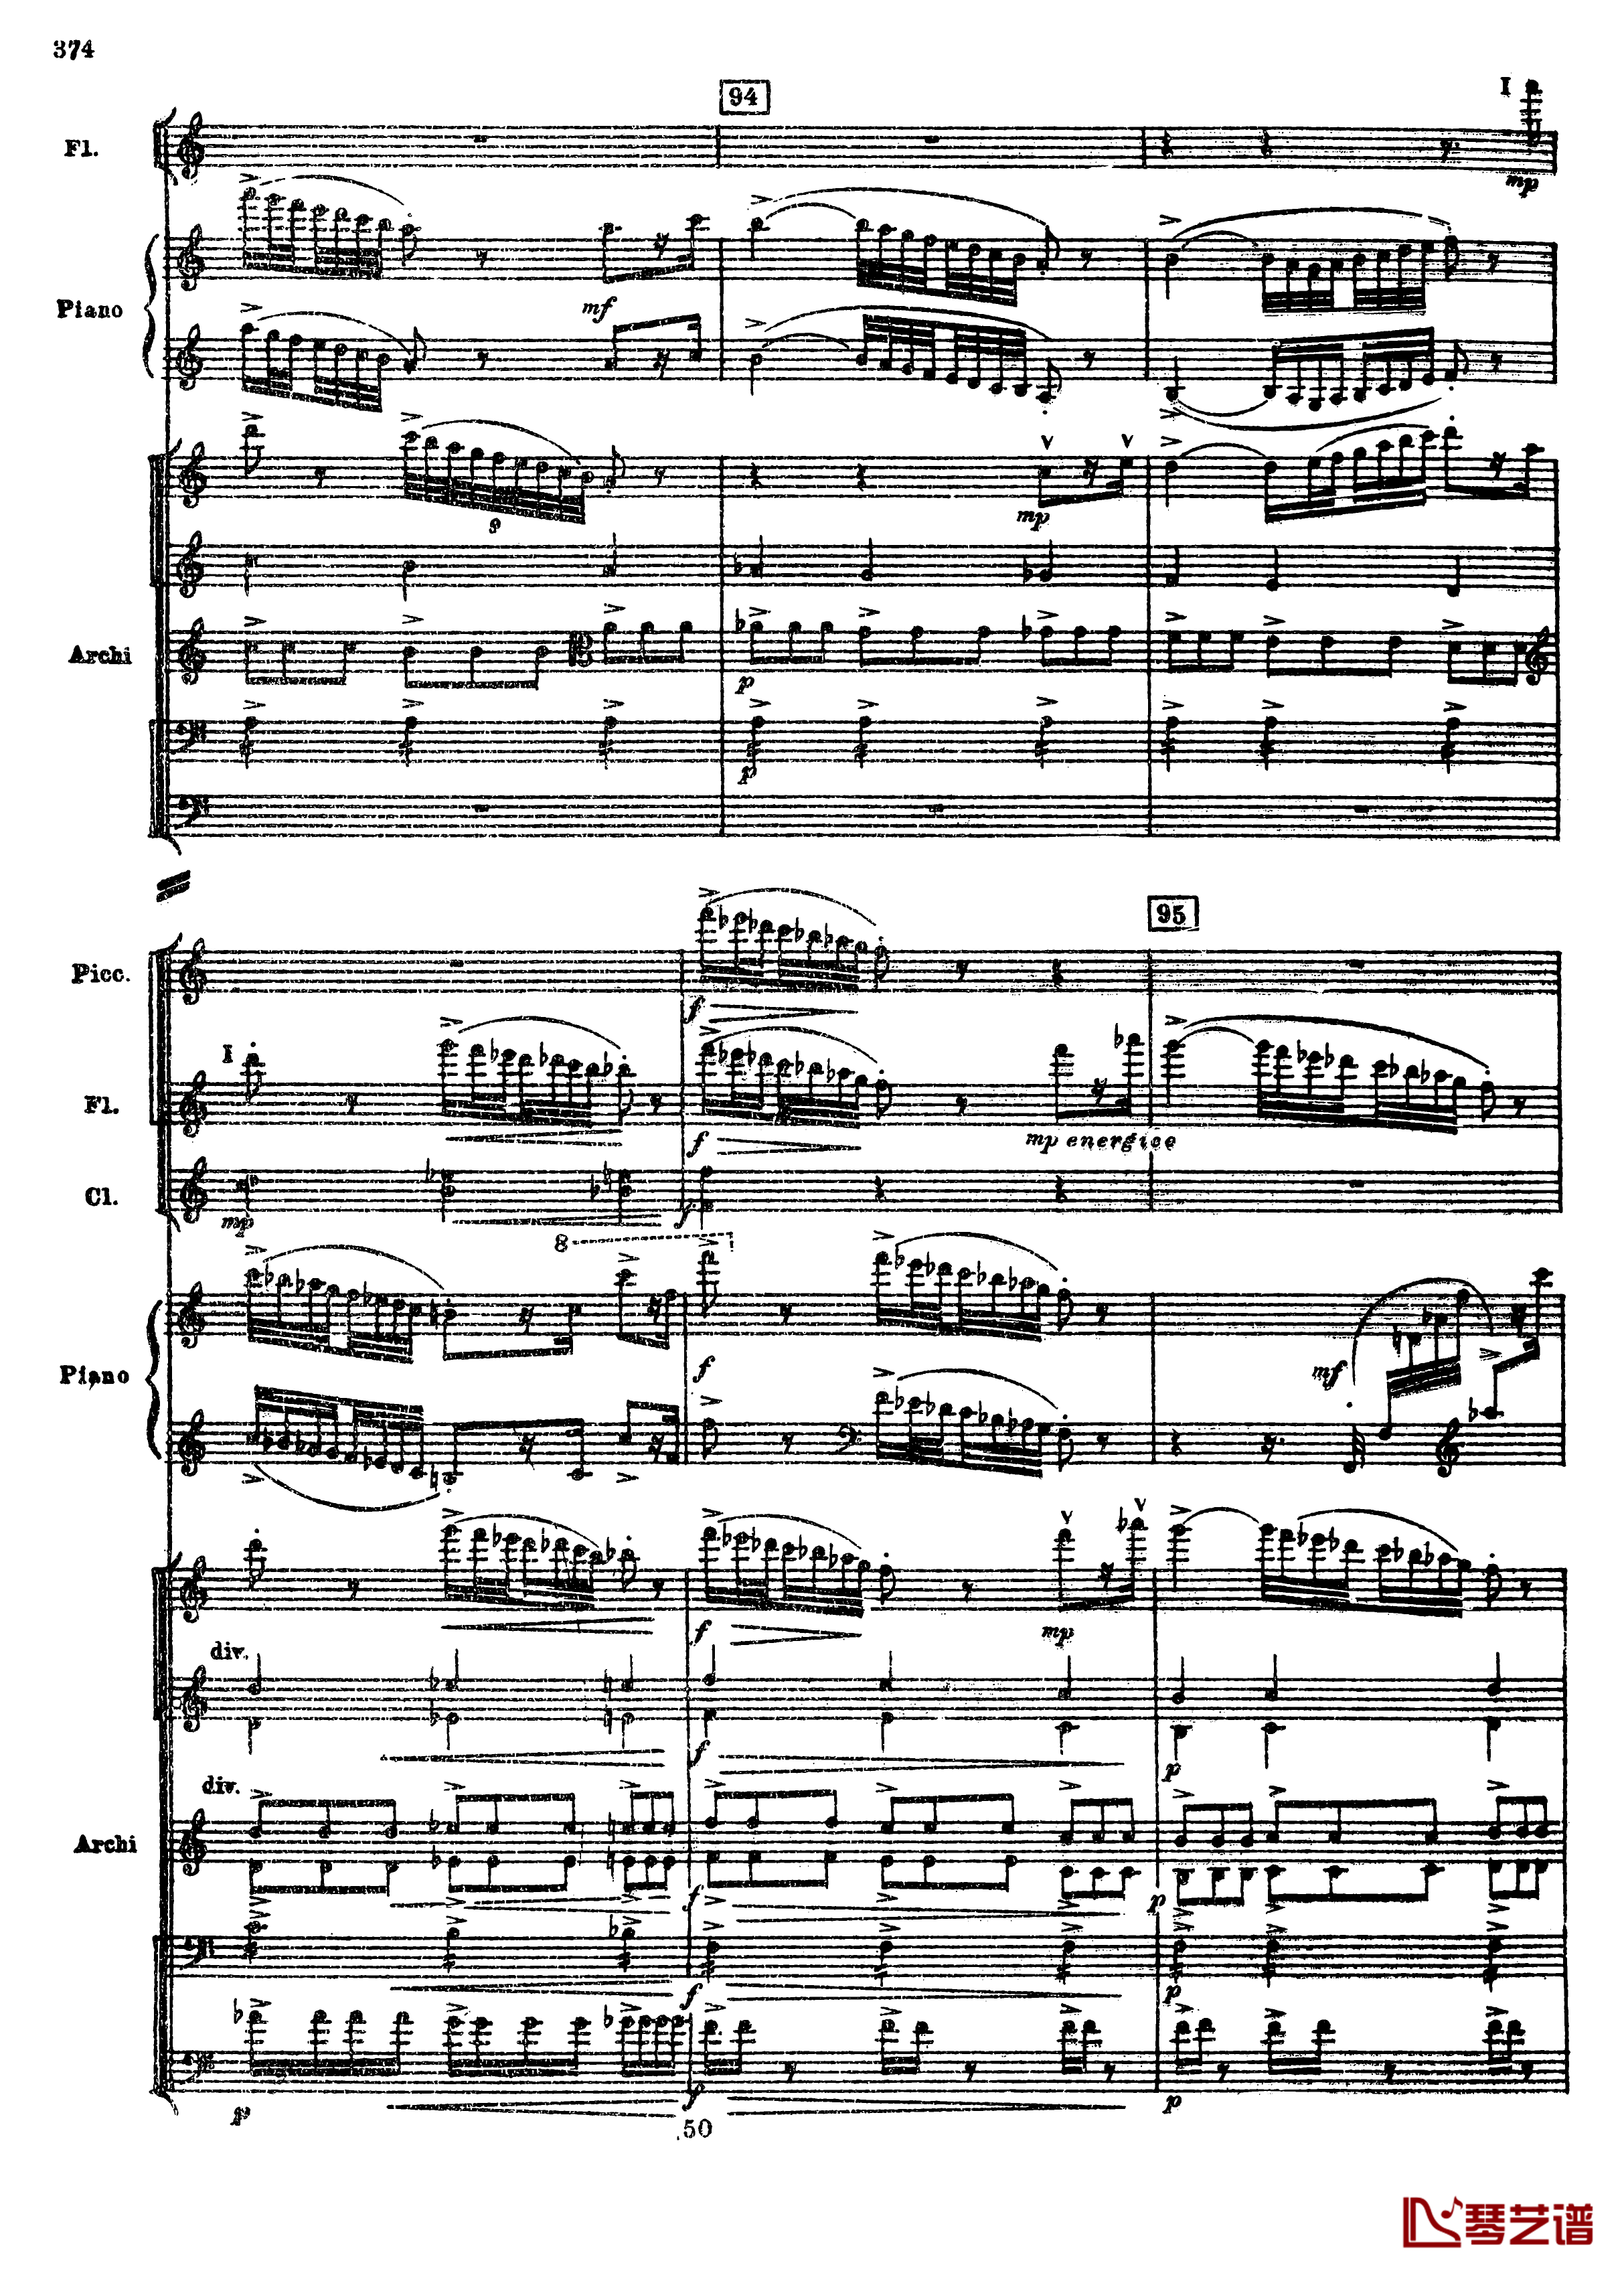 普罗科菲耶夫第三钢琴协奏曲钢琴谱-总谱-普罗科非耶夫106